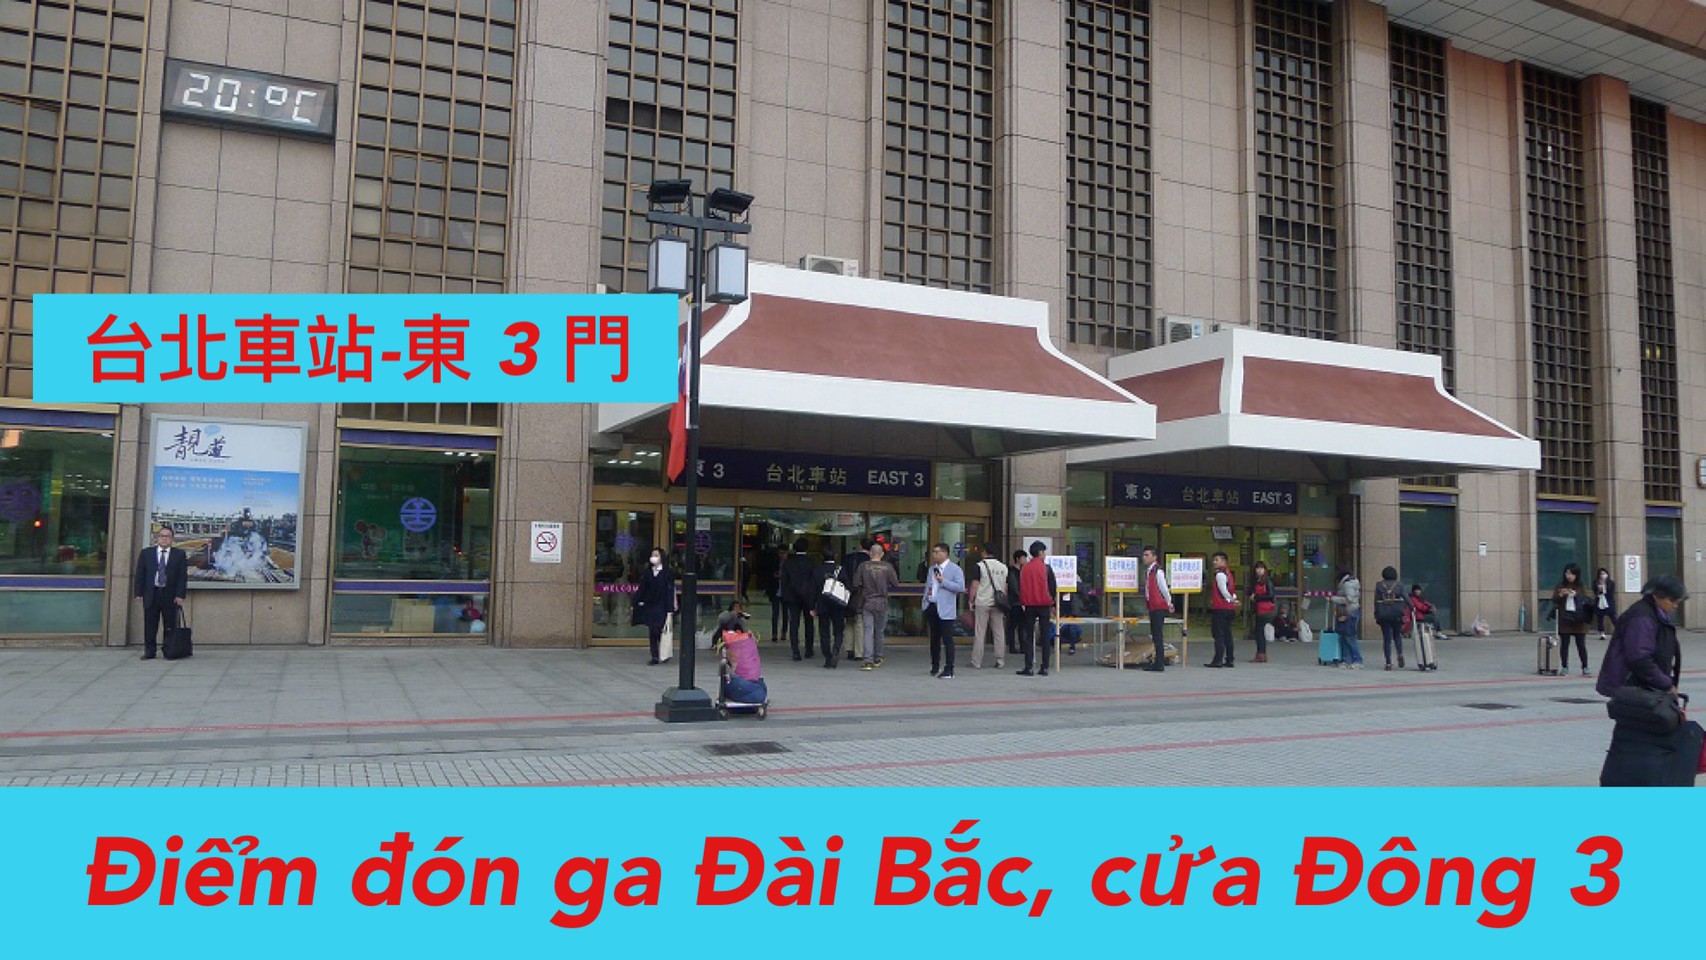 6:30 Đón tại ga Đài Bắc tại （East 3)  台北車站 (東3門)